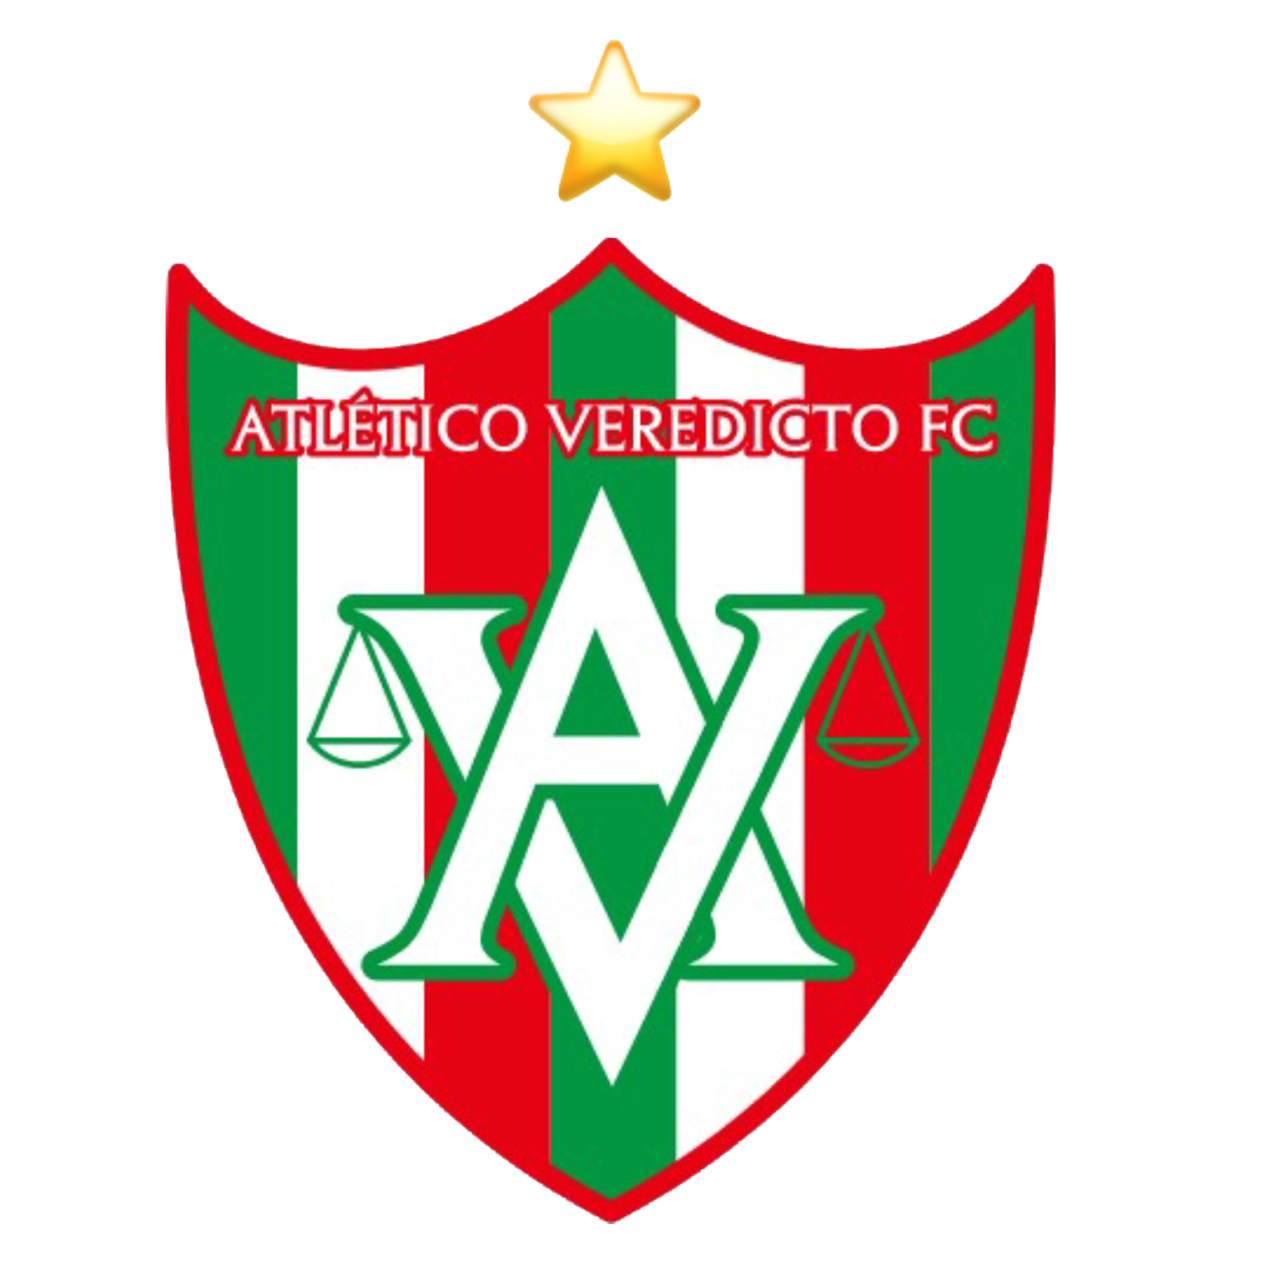 ATLÉTICO VEREDICTO FC